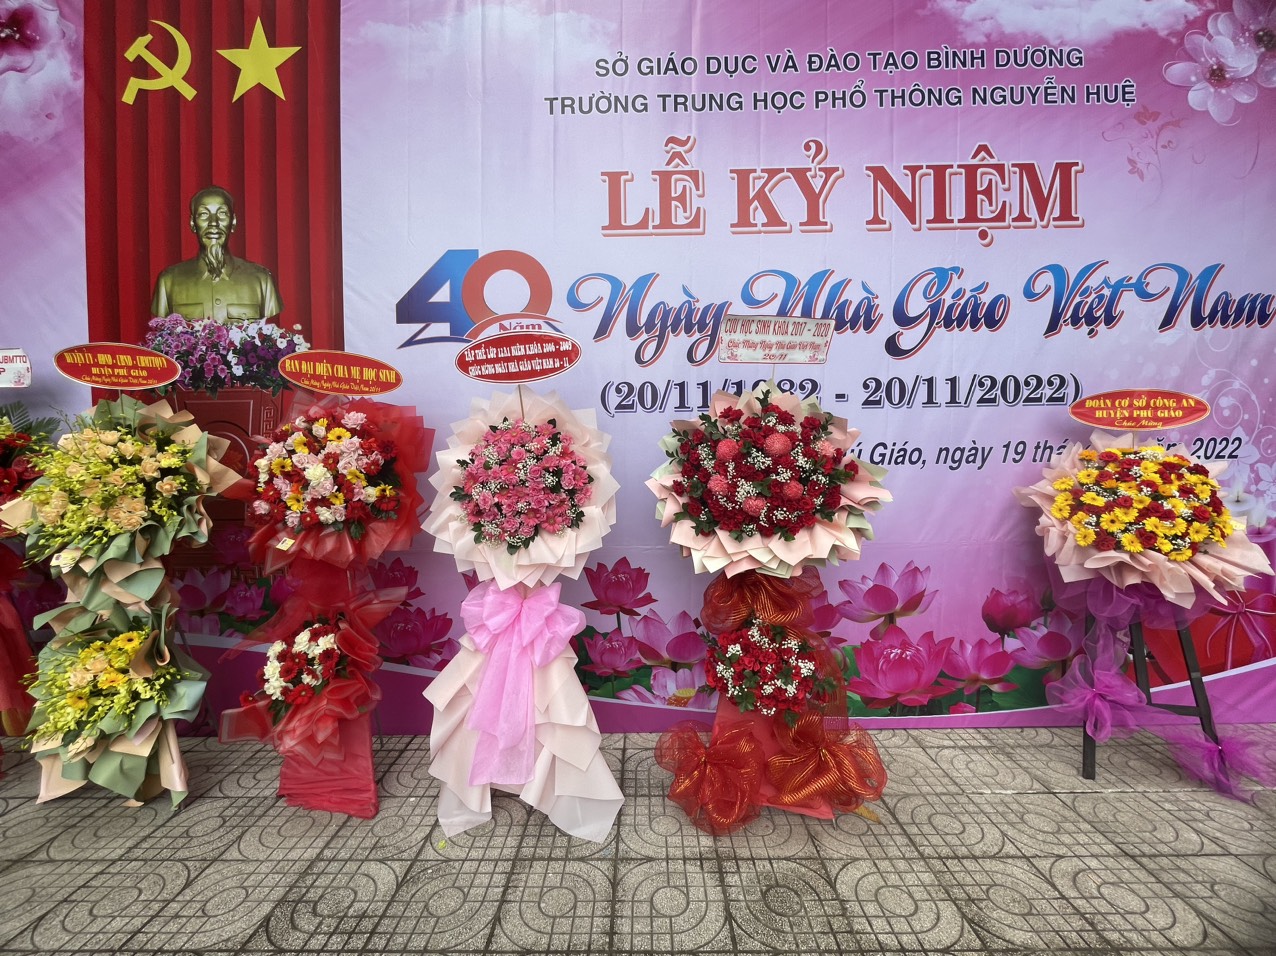 Trường THPT Nguyễn Huệ tổ chức lễ kỷ niệm 40 năm ngày Hiến chương nhà giáo Việt Nam